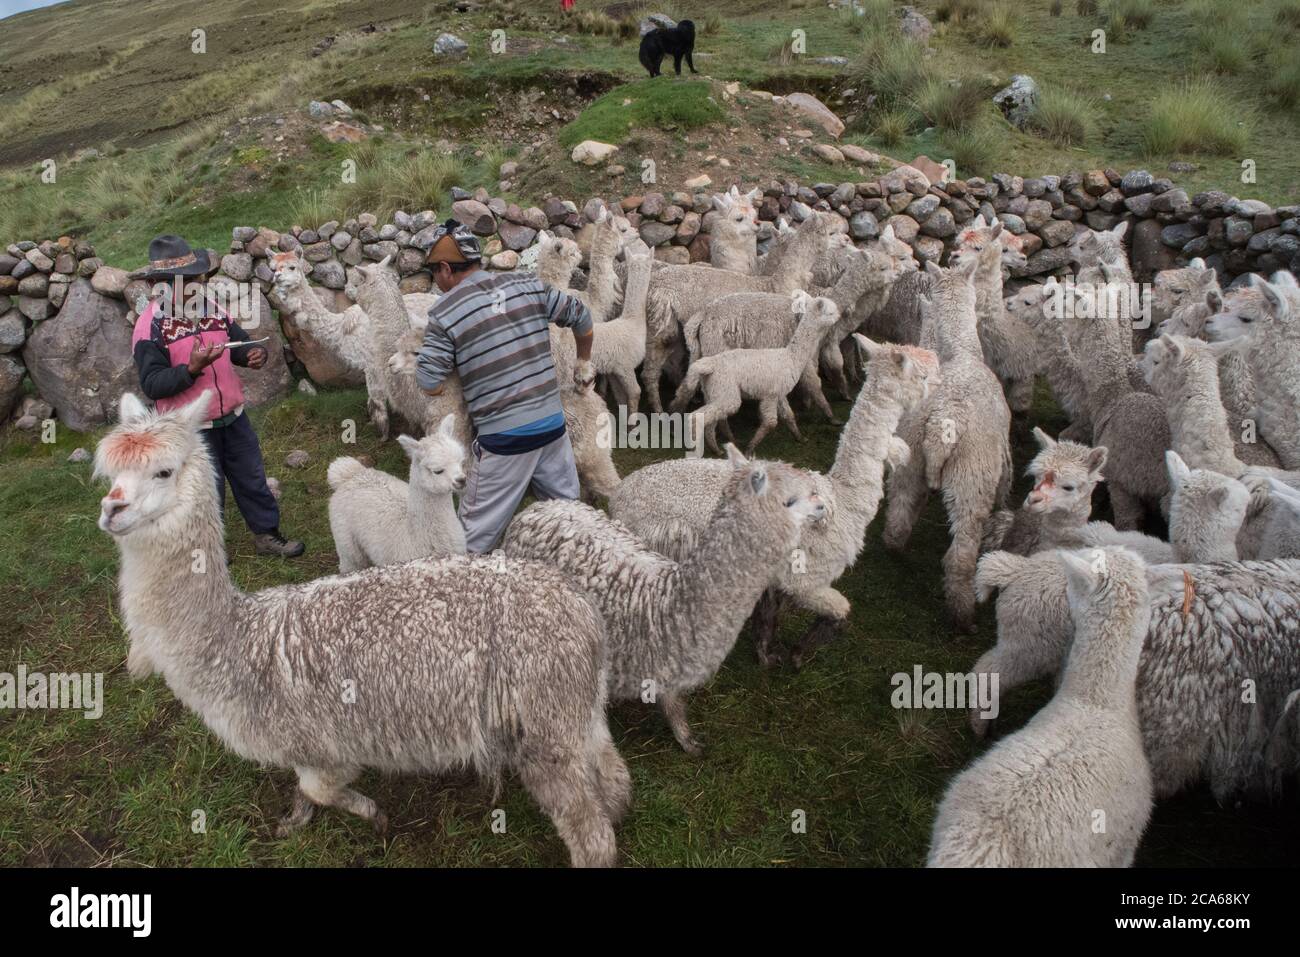 La alpacas en una comunidad peruana en los Andes, preparándolos para un chequeo de salud. Foto de stock